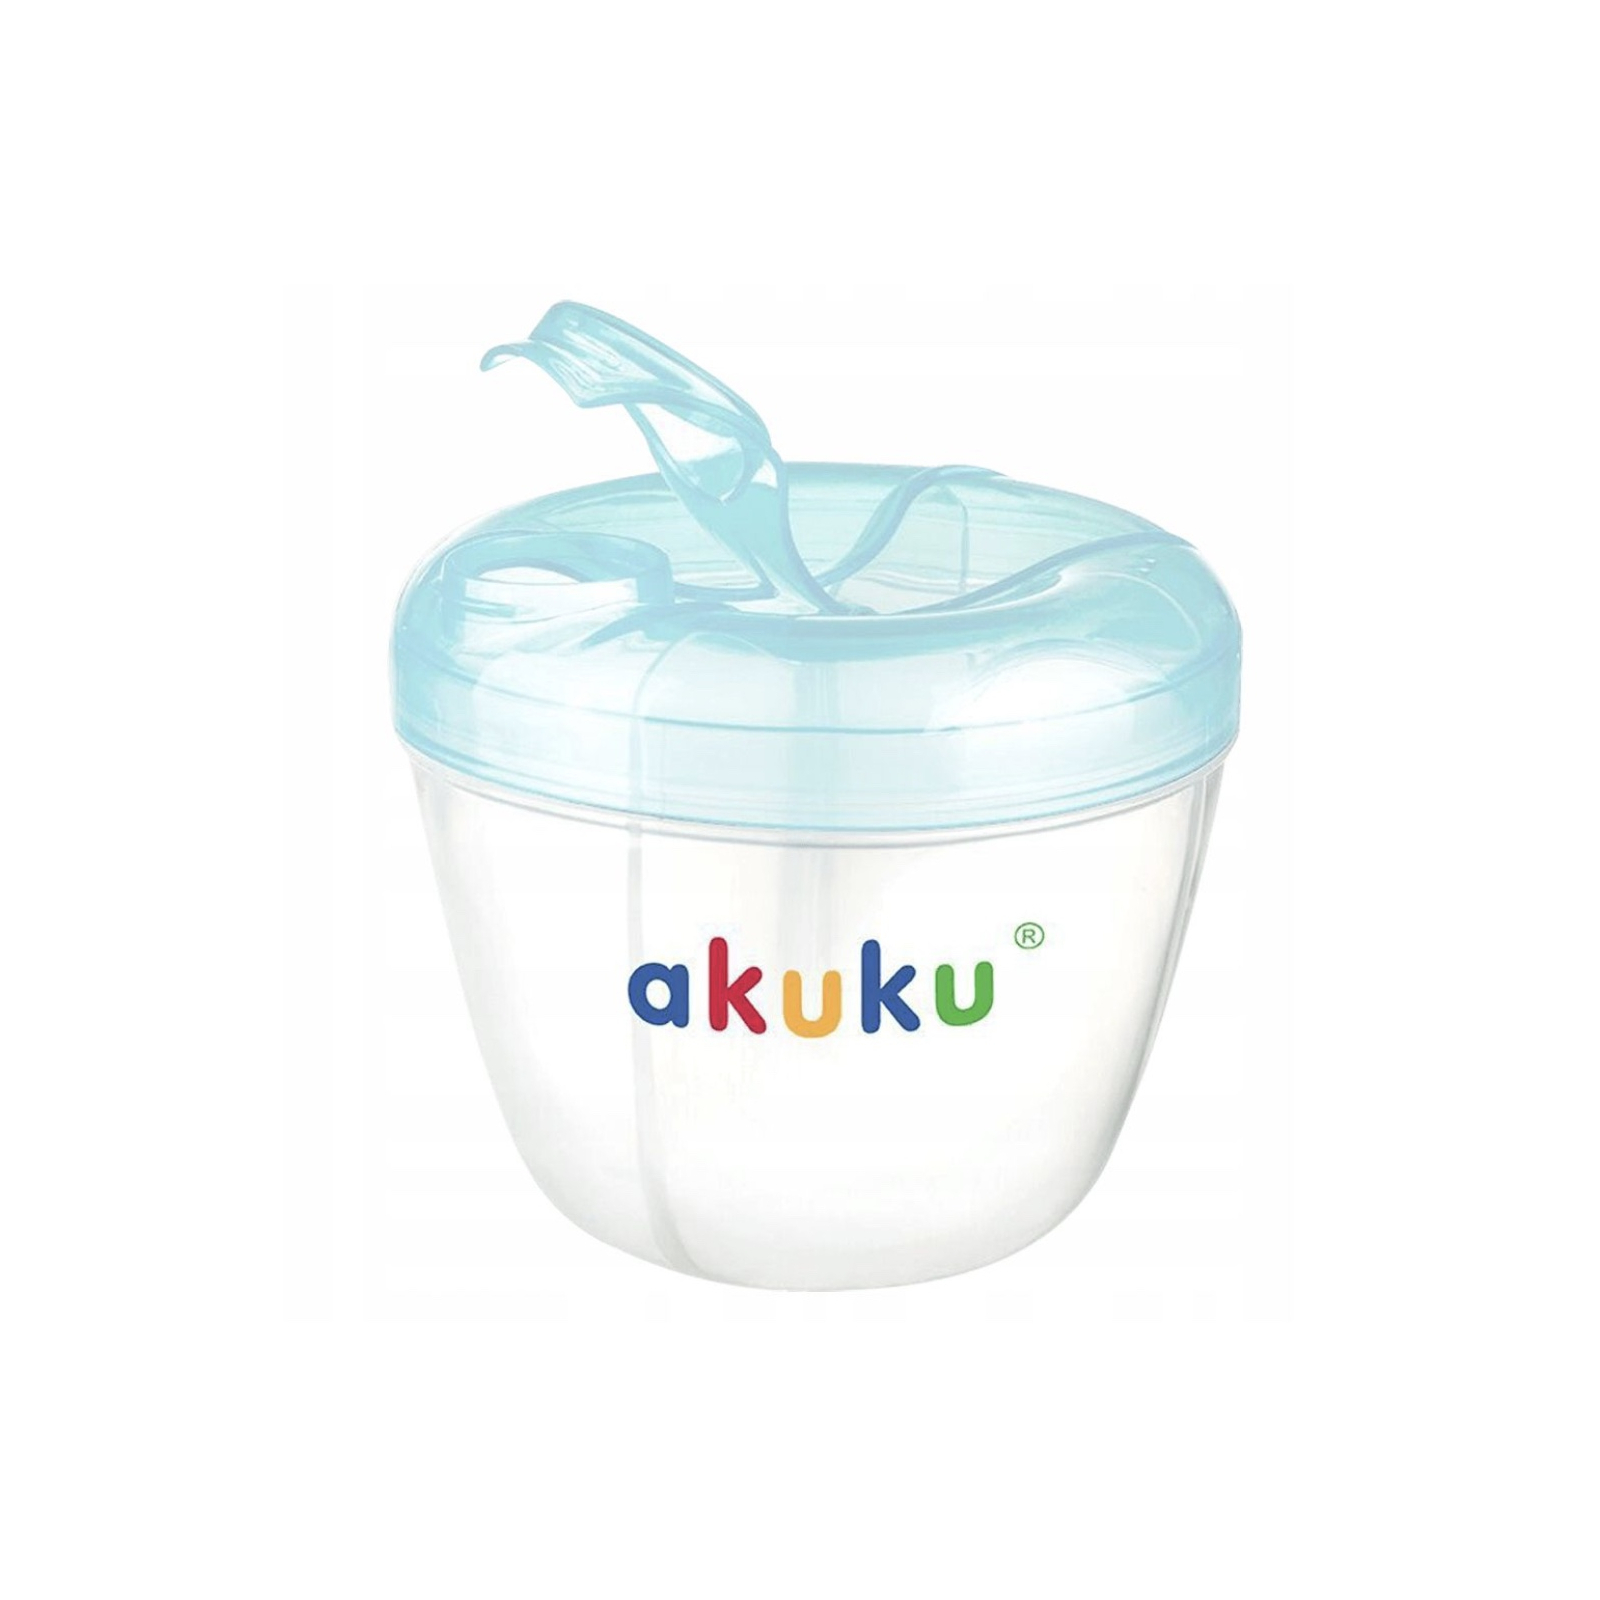 Контейнер для хранения продуктов Akuku голубой (A0461)